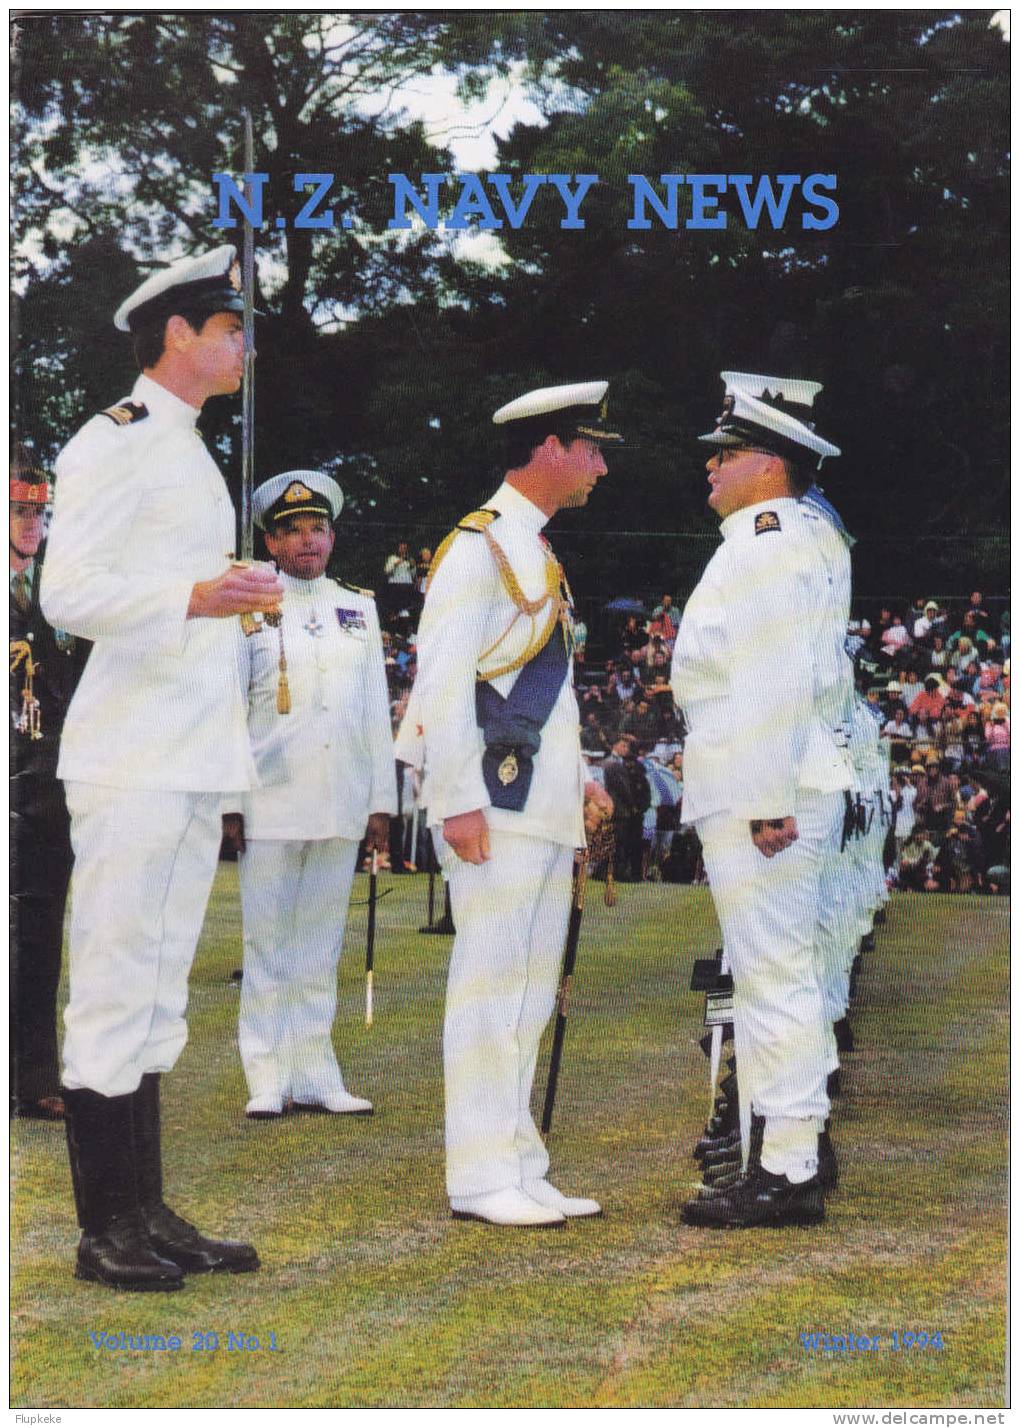 Navy News New Zealand 01 Vol 20 Winter 1994 - Militair / Oorlog